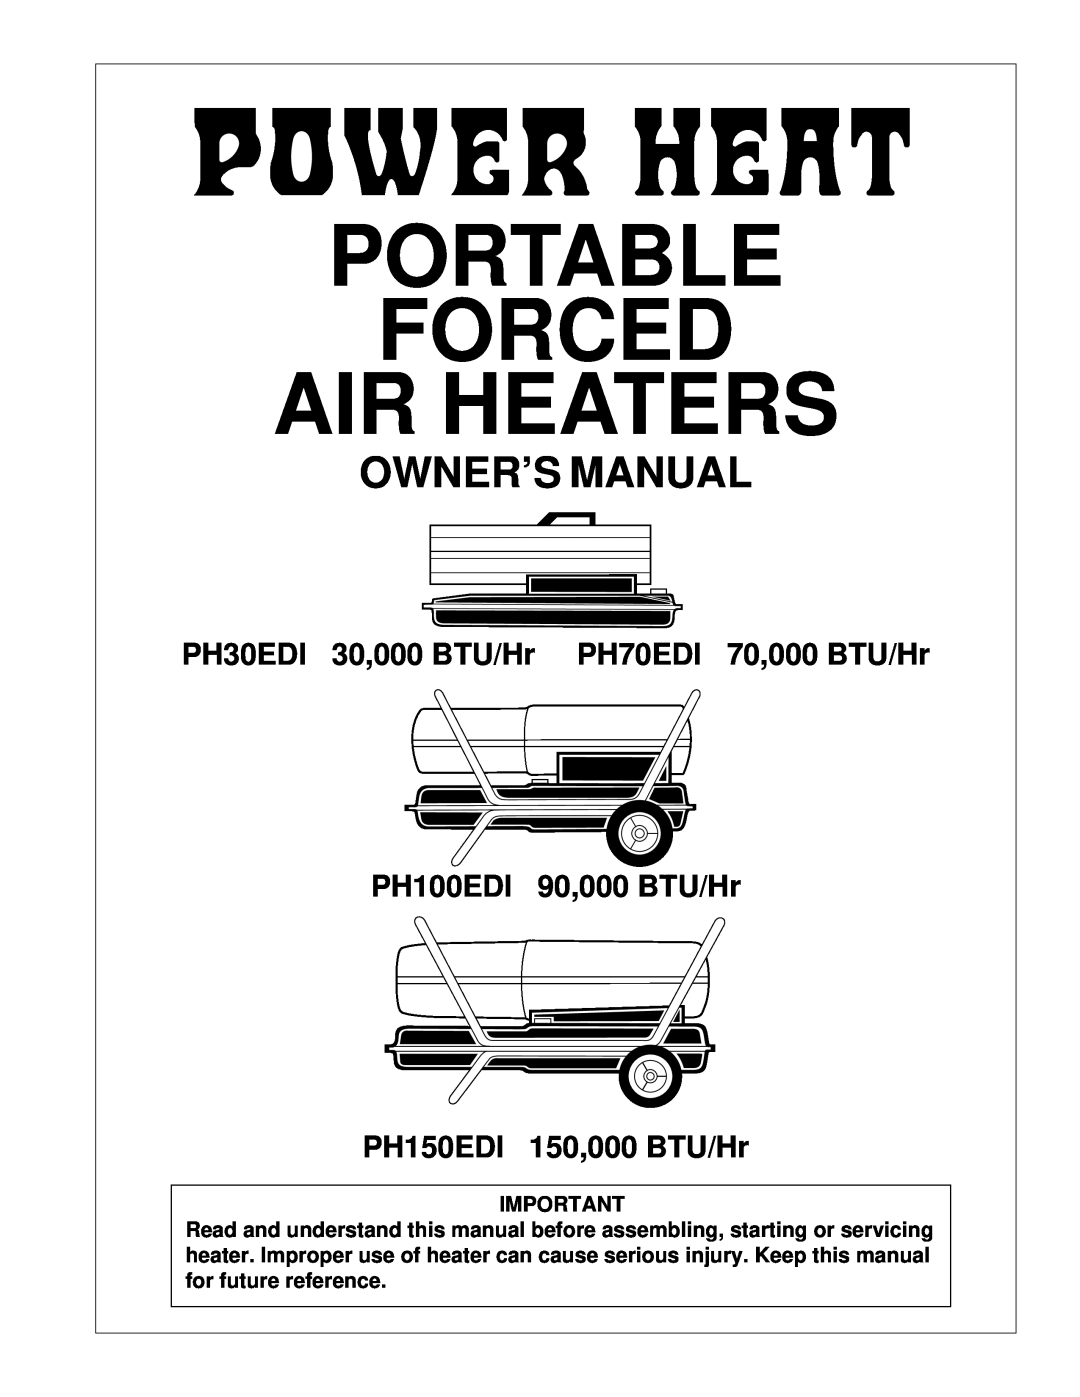 Desa owner manual PH30EDI 30,000 BTU/Hr PH70EDI 70,000 BTU/Hr, PH150EDI 150,000 BTU/Hr, Portable Forced Air Heaters 